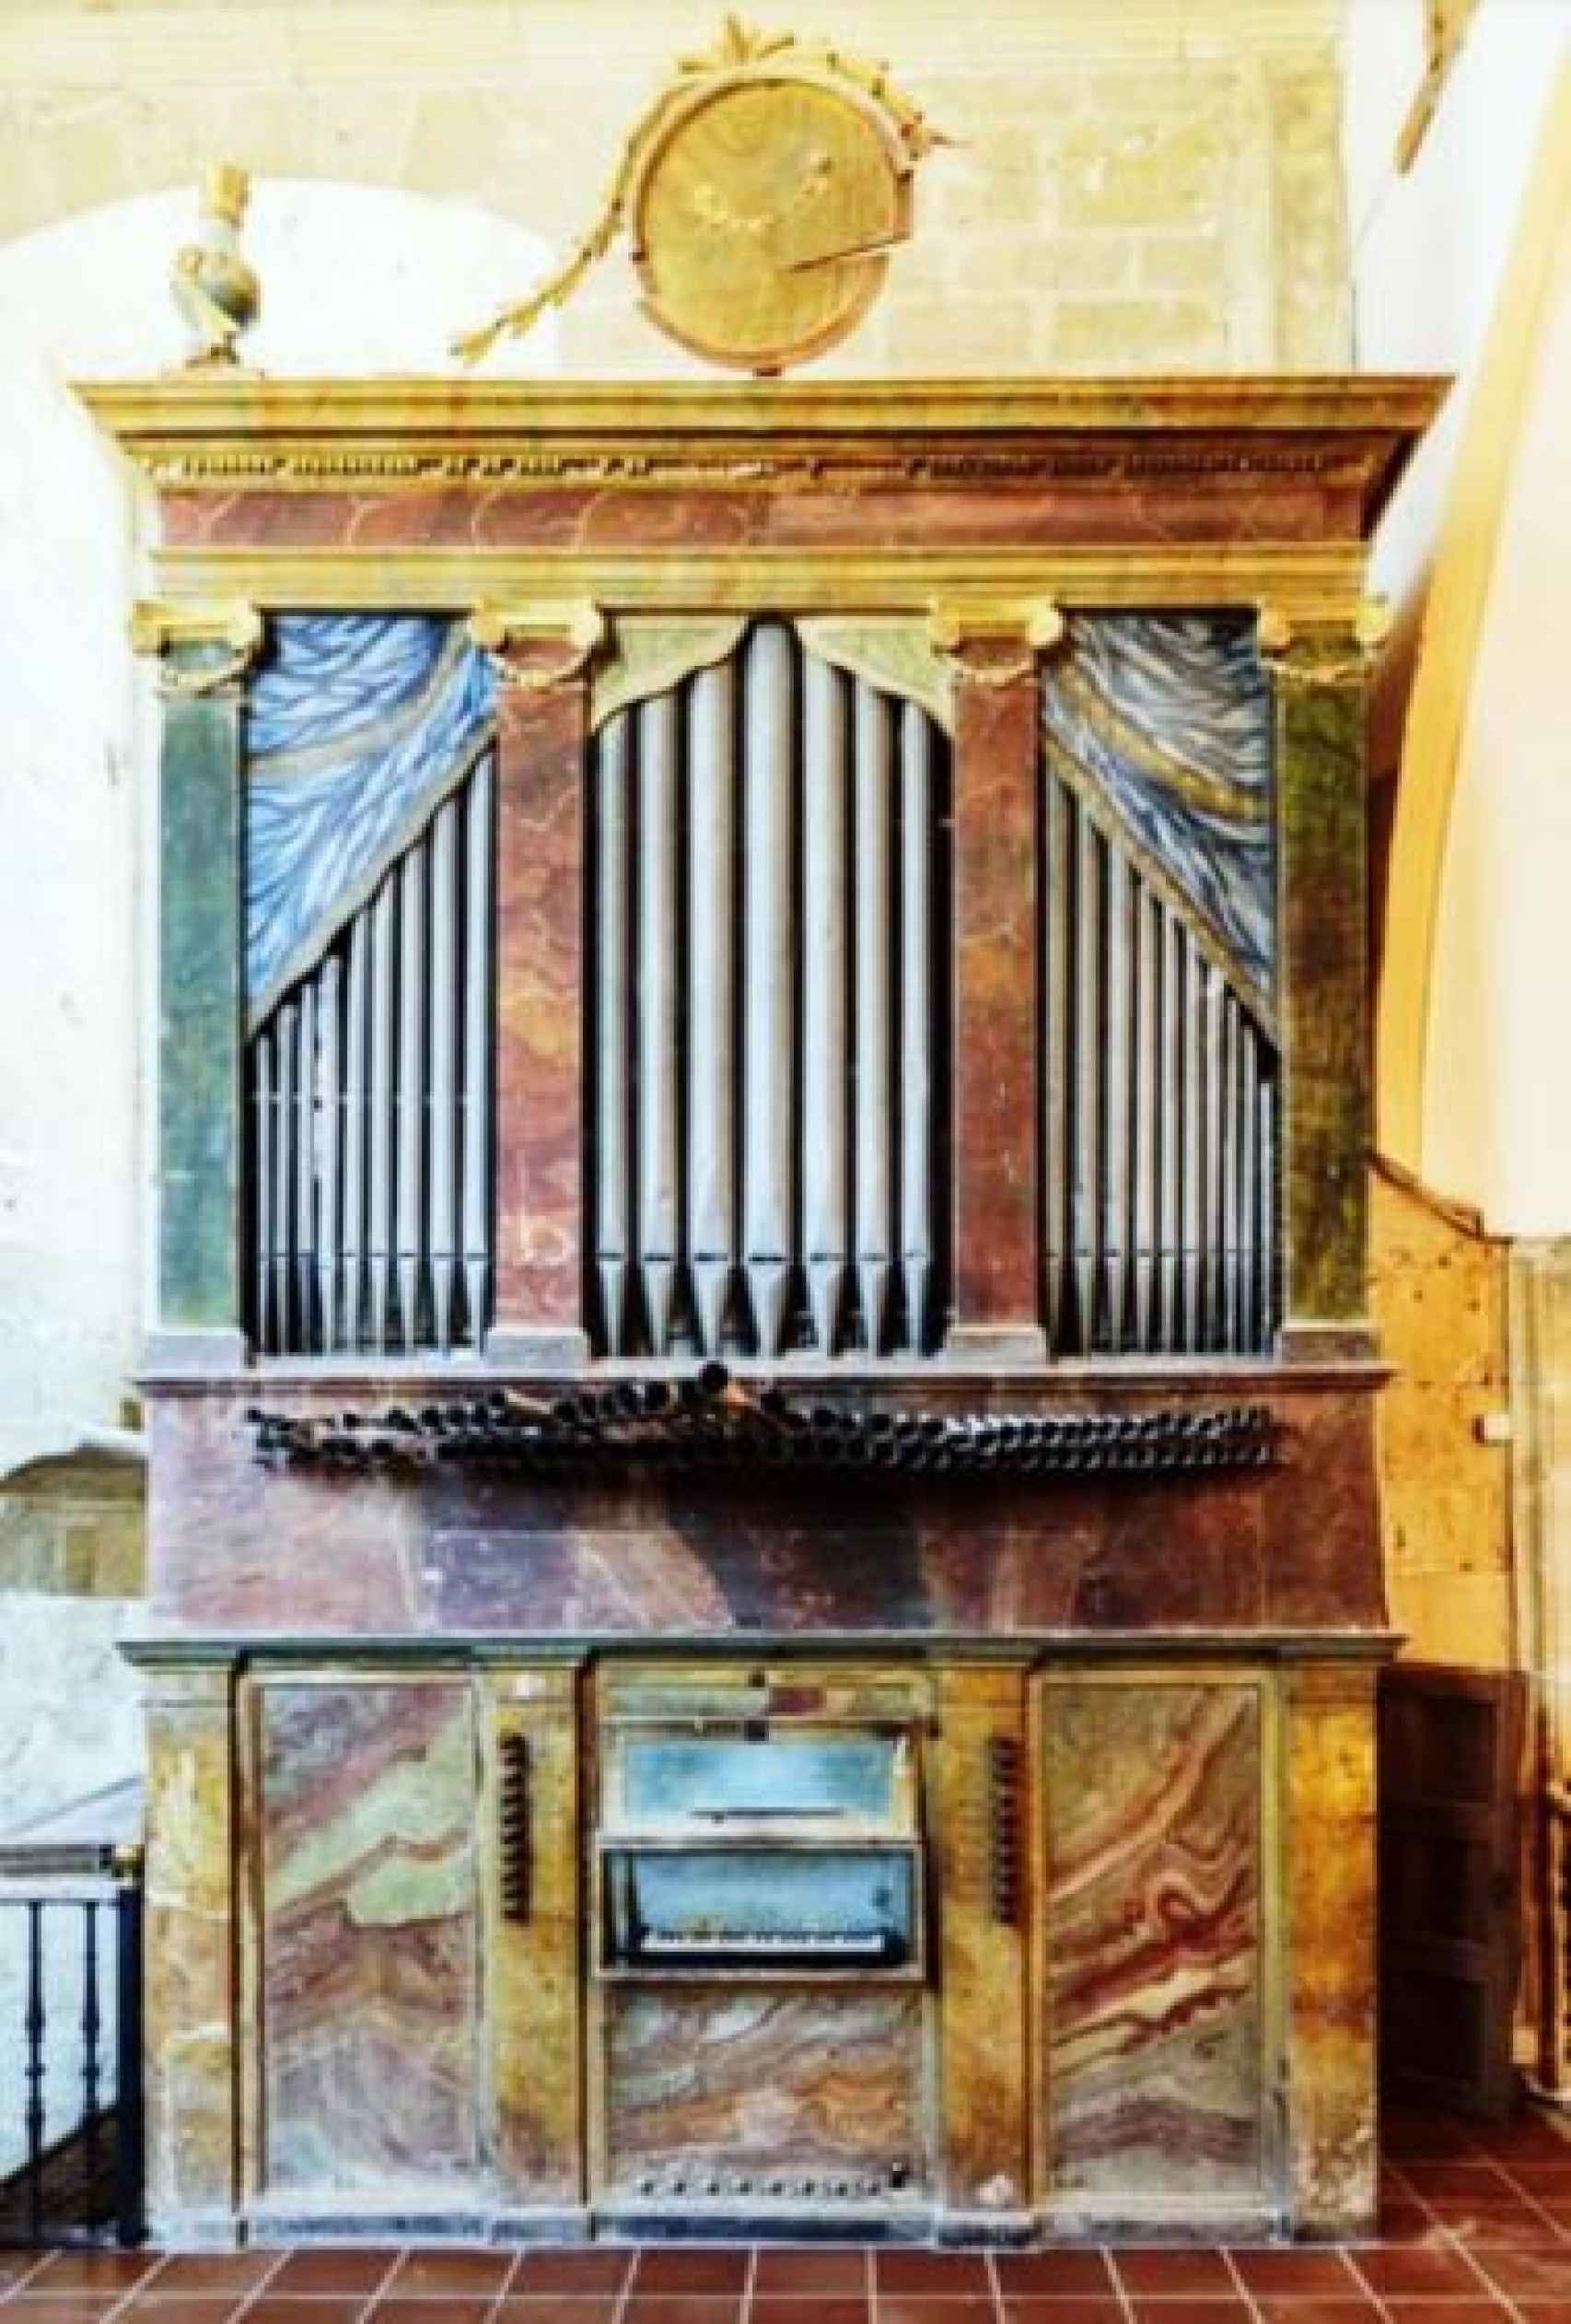 Órgano de la iglesia de Nuestra Señora de la Asunción de Vadocondes